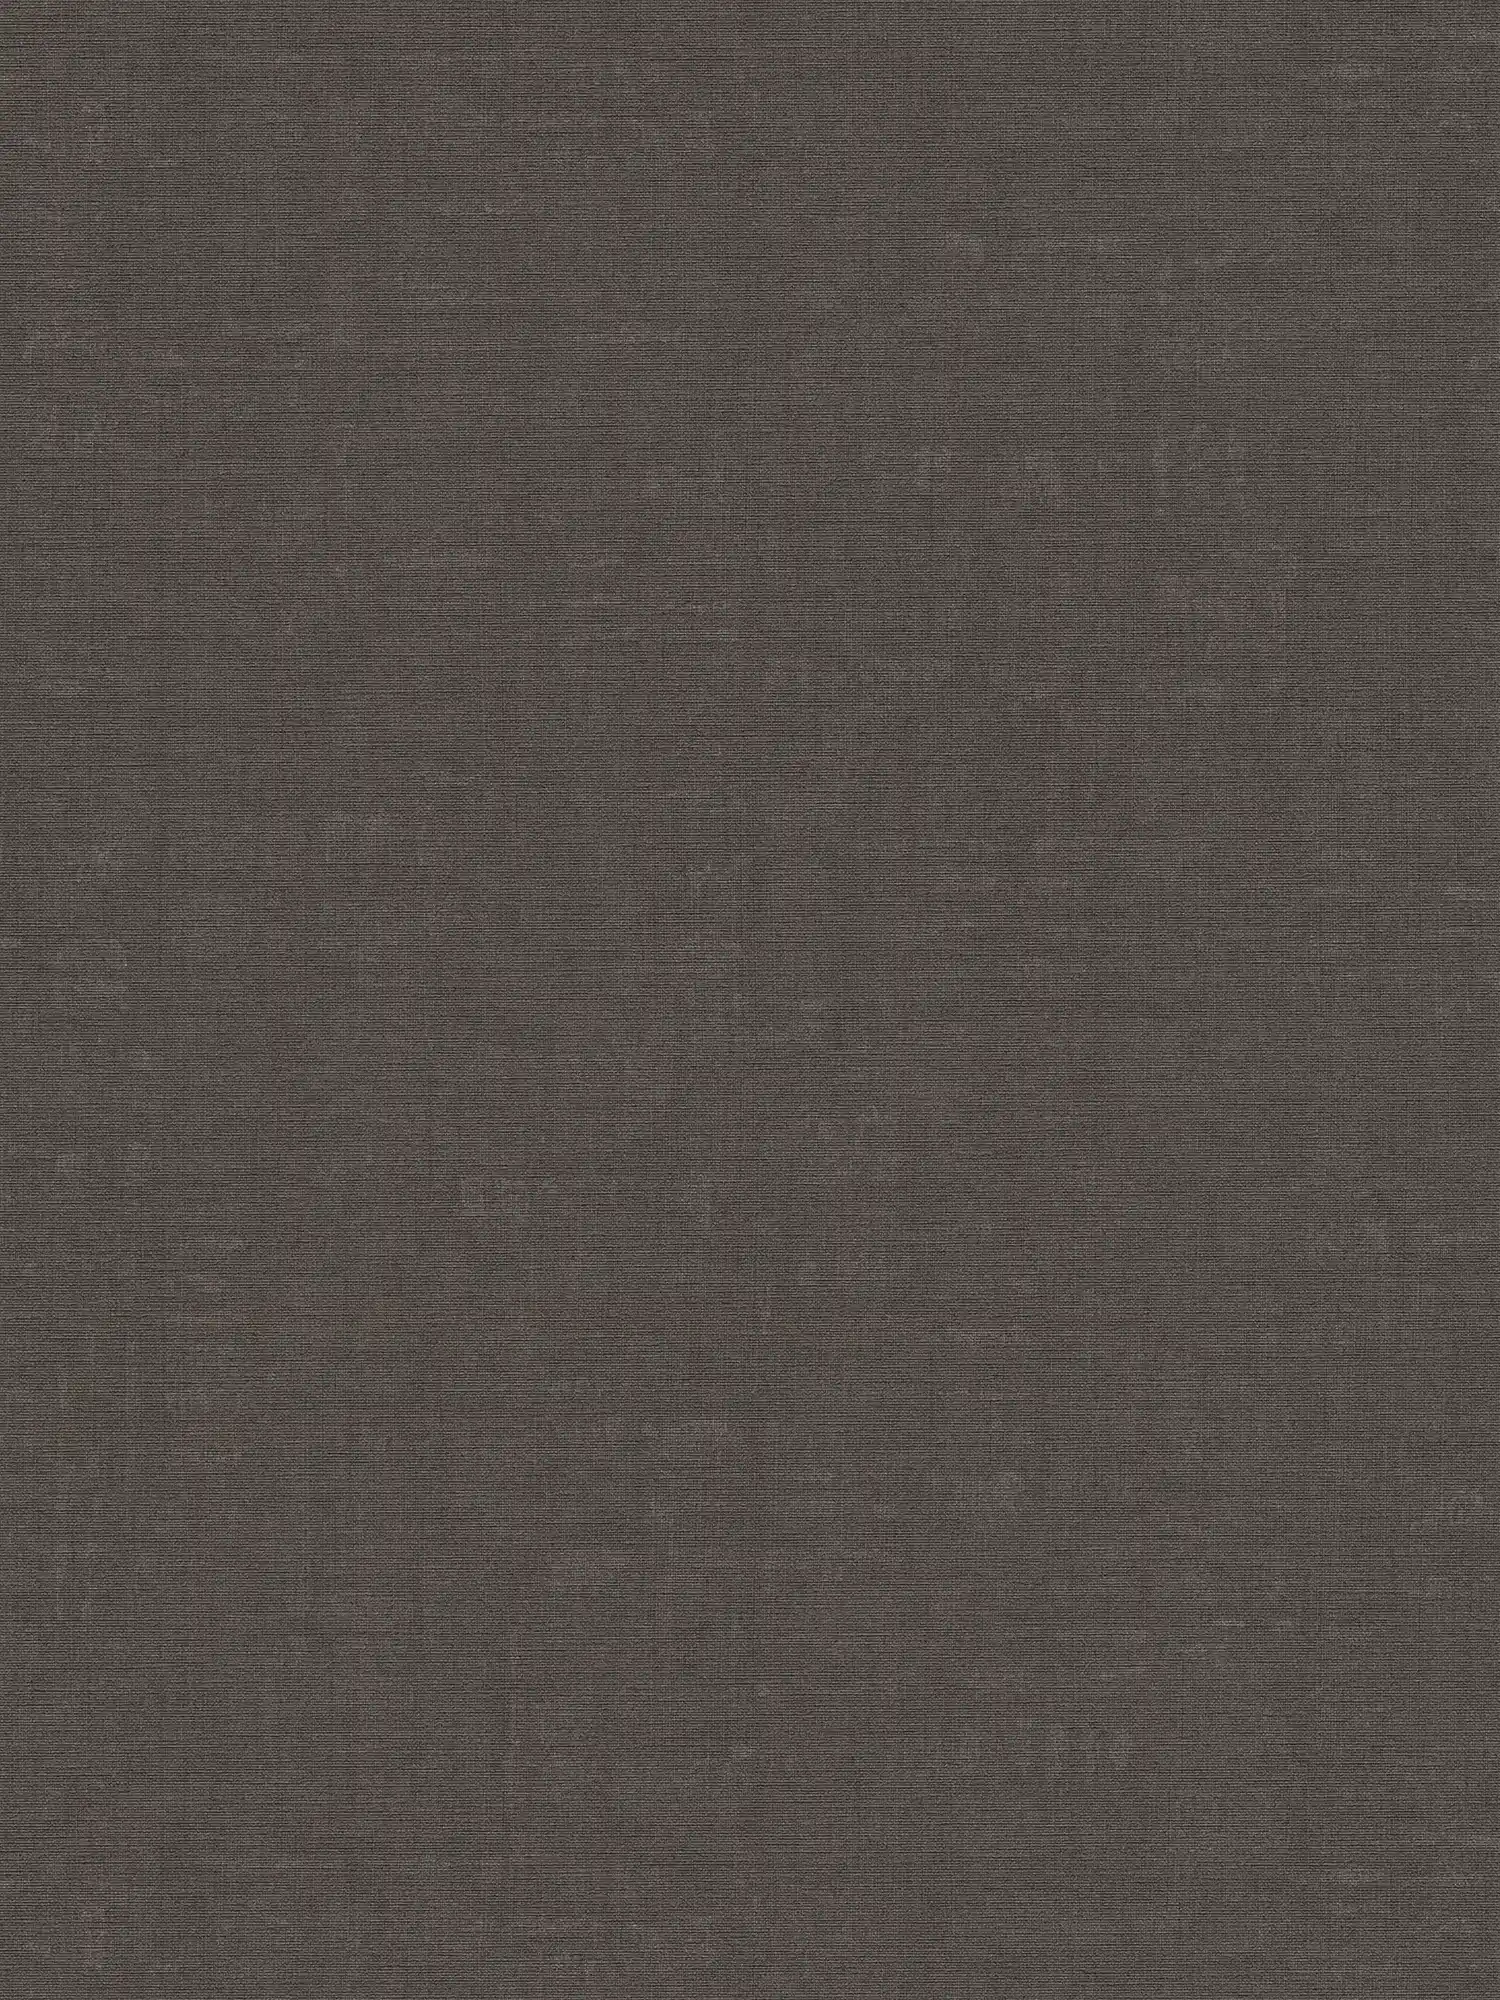 papier peint chiné uni avec dessin structuré - gris, noir
